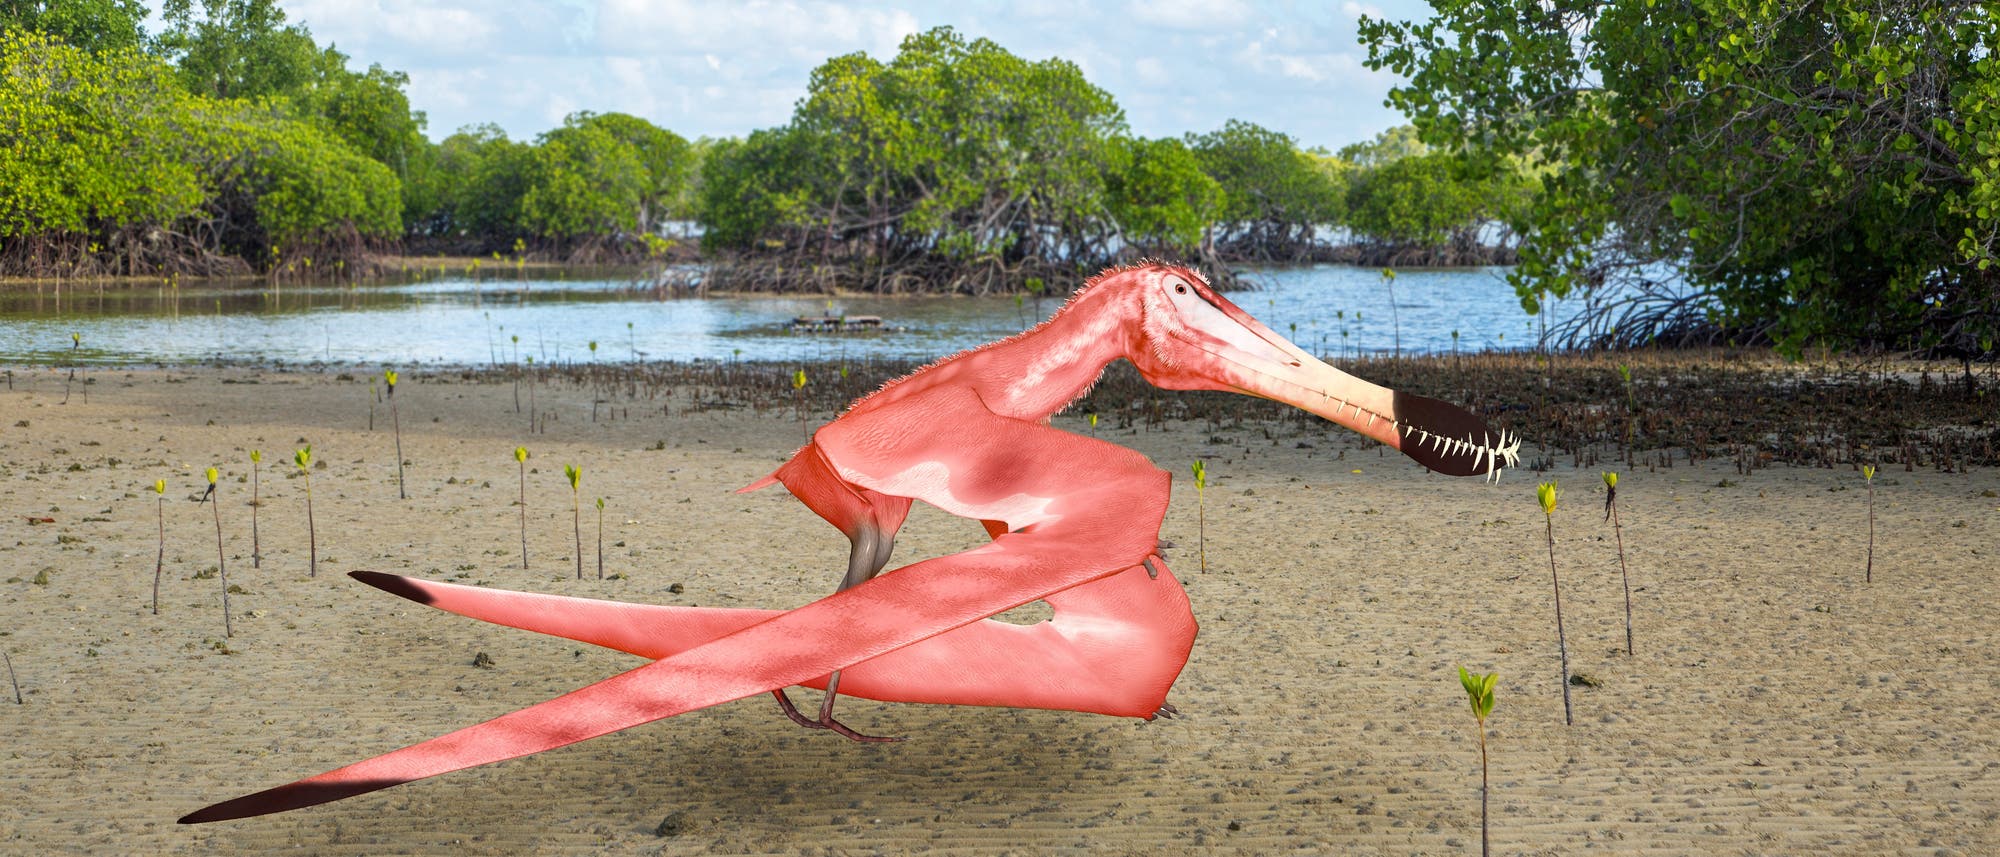 Ein rosafarbener Flugsaurier. Natürlich ist die Färbung reine Spekulation, aber Flamingos bekommen ihre Federfarbe aus der Nahrung, und einige Flugsaurier ernähren sich auf die gleiche Weise. Insofern ist das Rosa nicht komplett aus der Luft gegriffen. Auch wenn das Tier guckt, als würde es uns das übelnehmen.